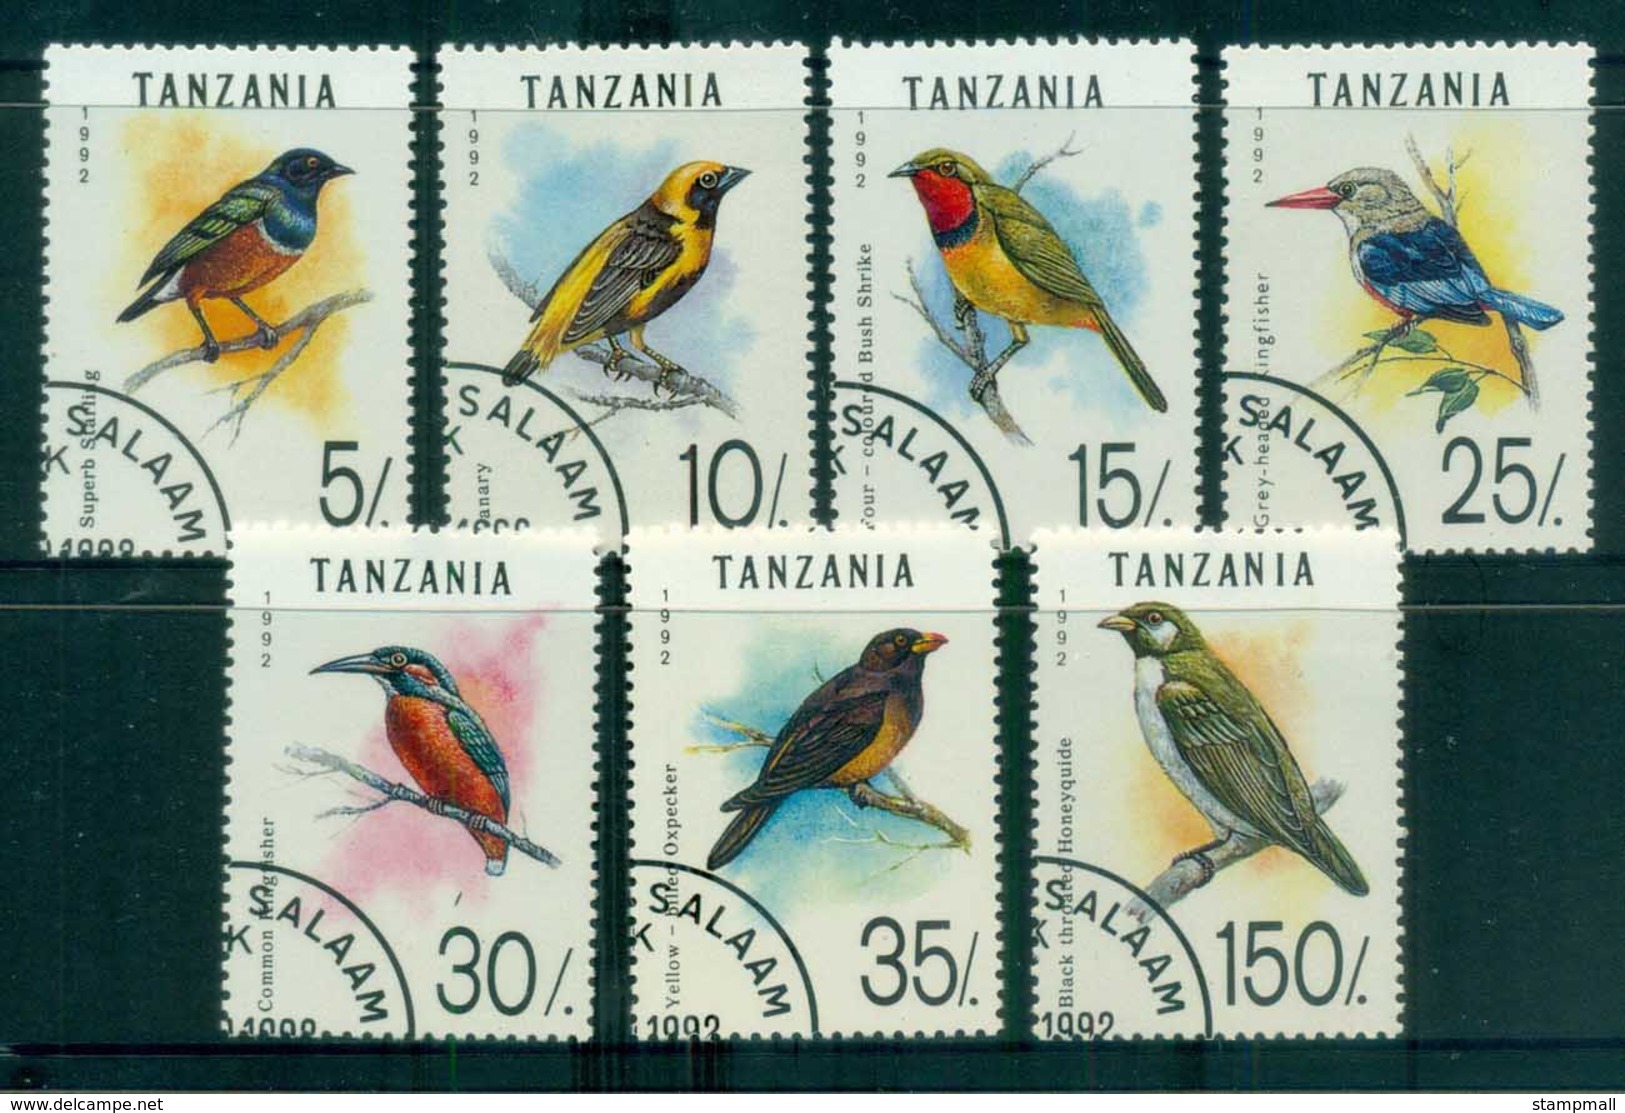 Tanzania 1992 Birds CTO Lot84799 - Swaziland (1968-...)